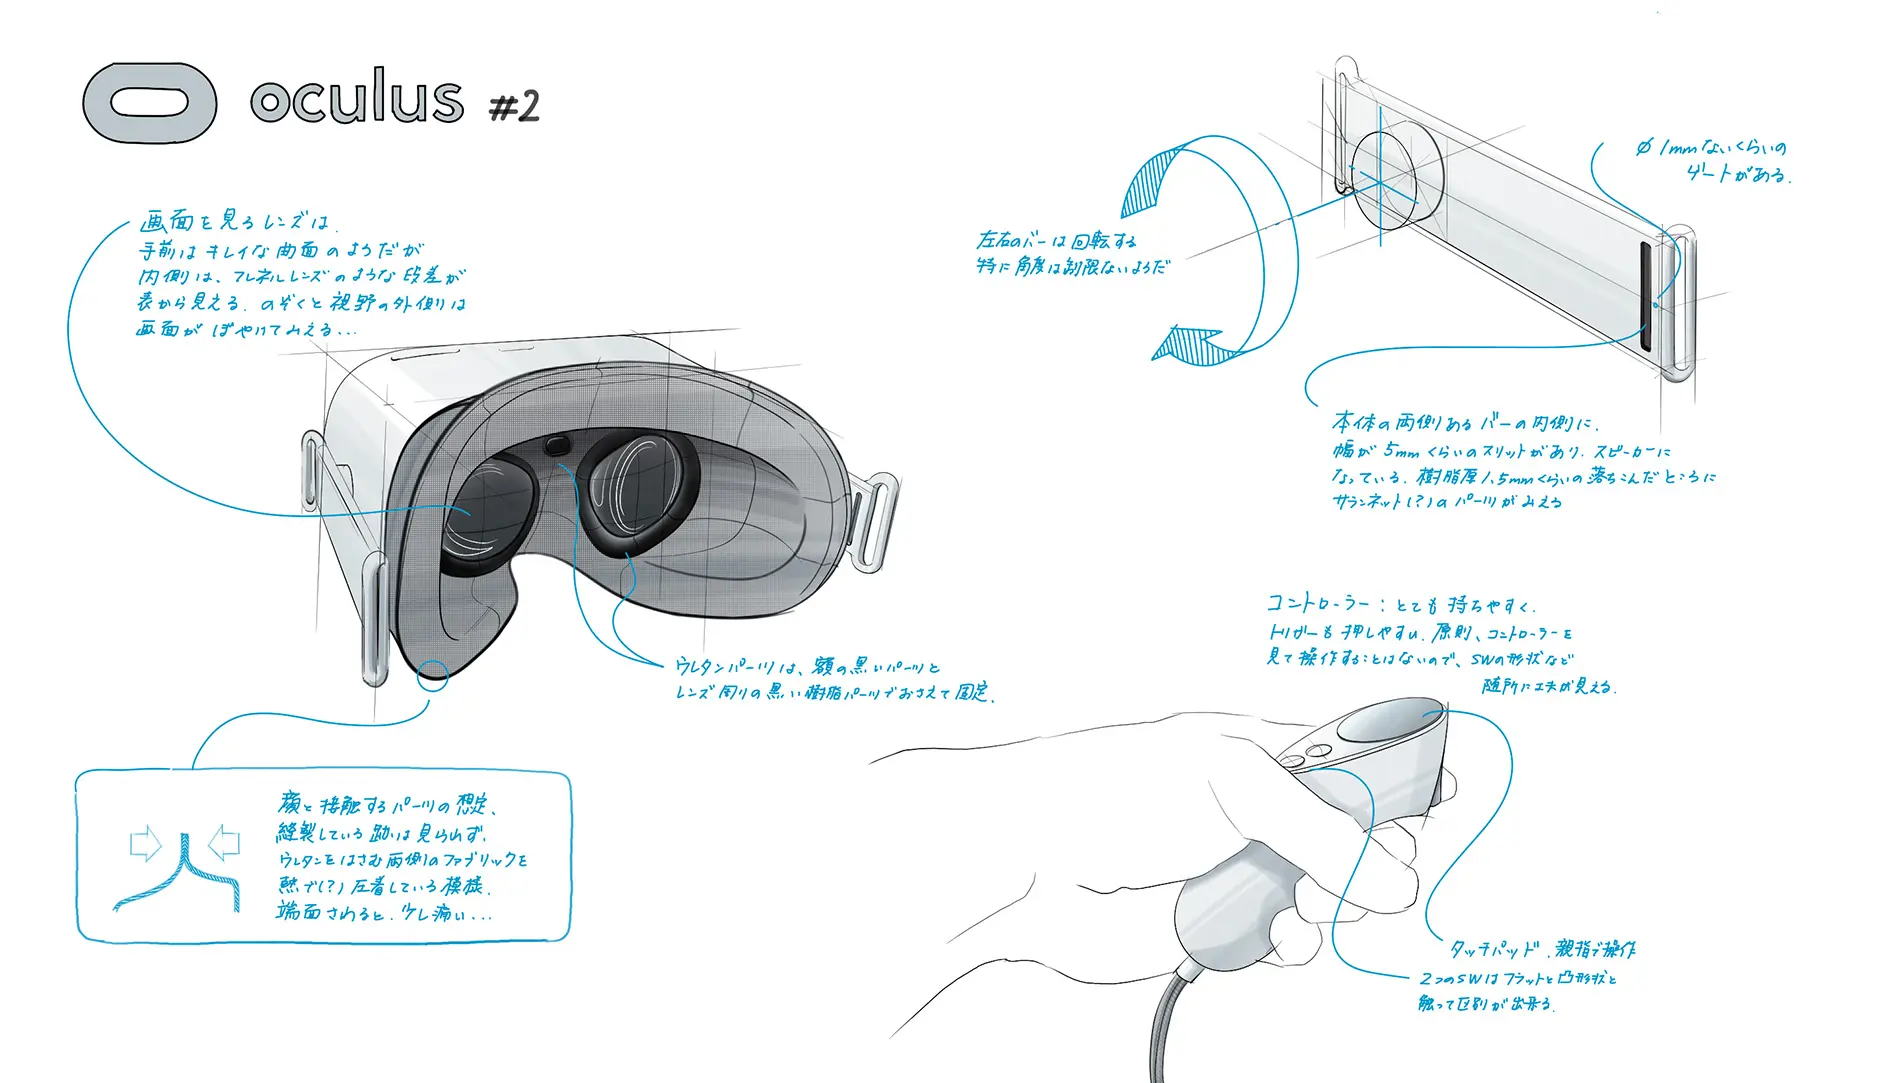 プロダクトのデザイン分析・観察スケッチ01 oculus